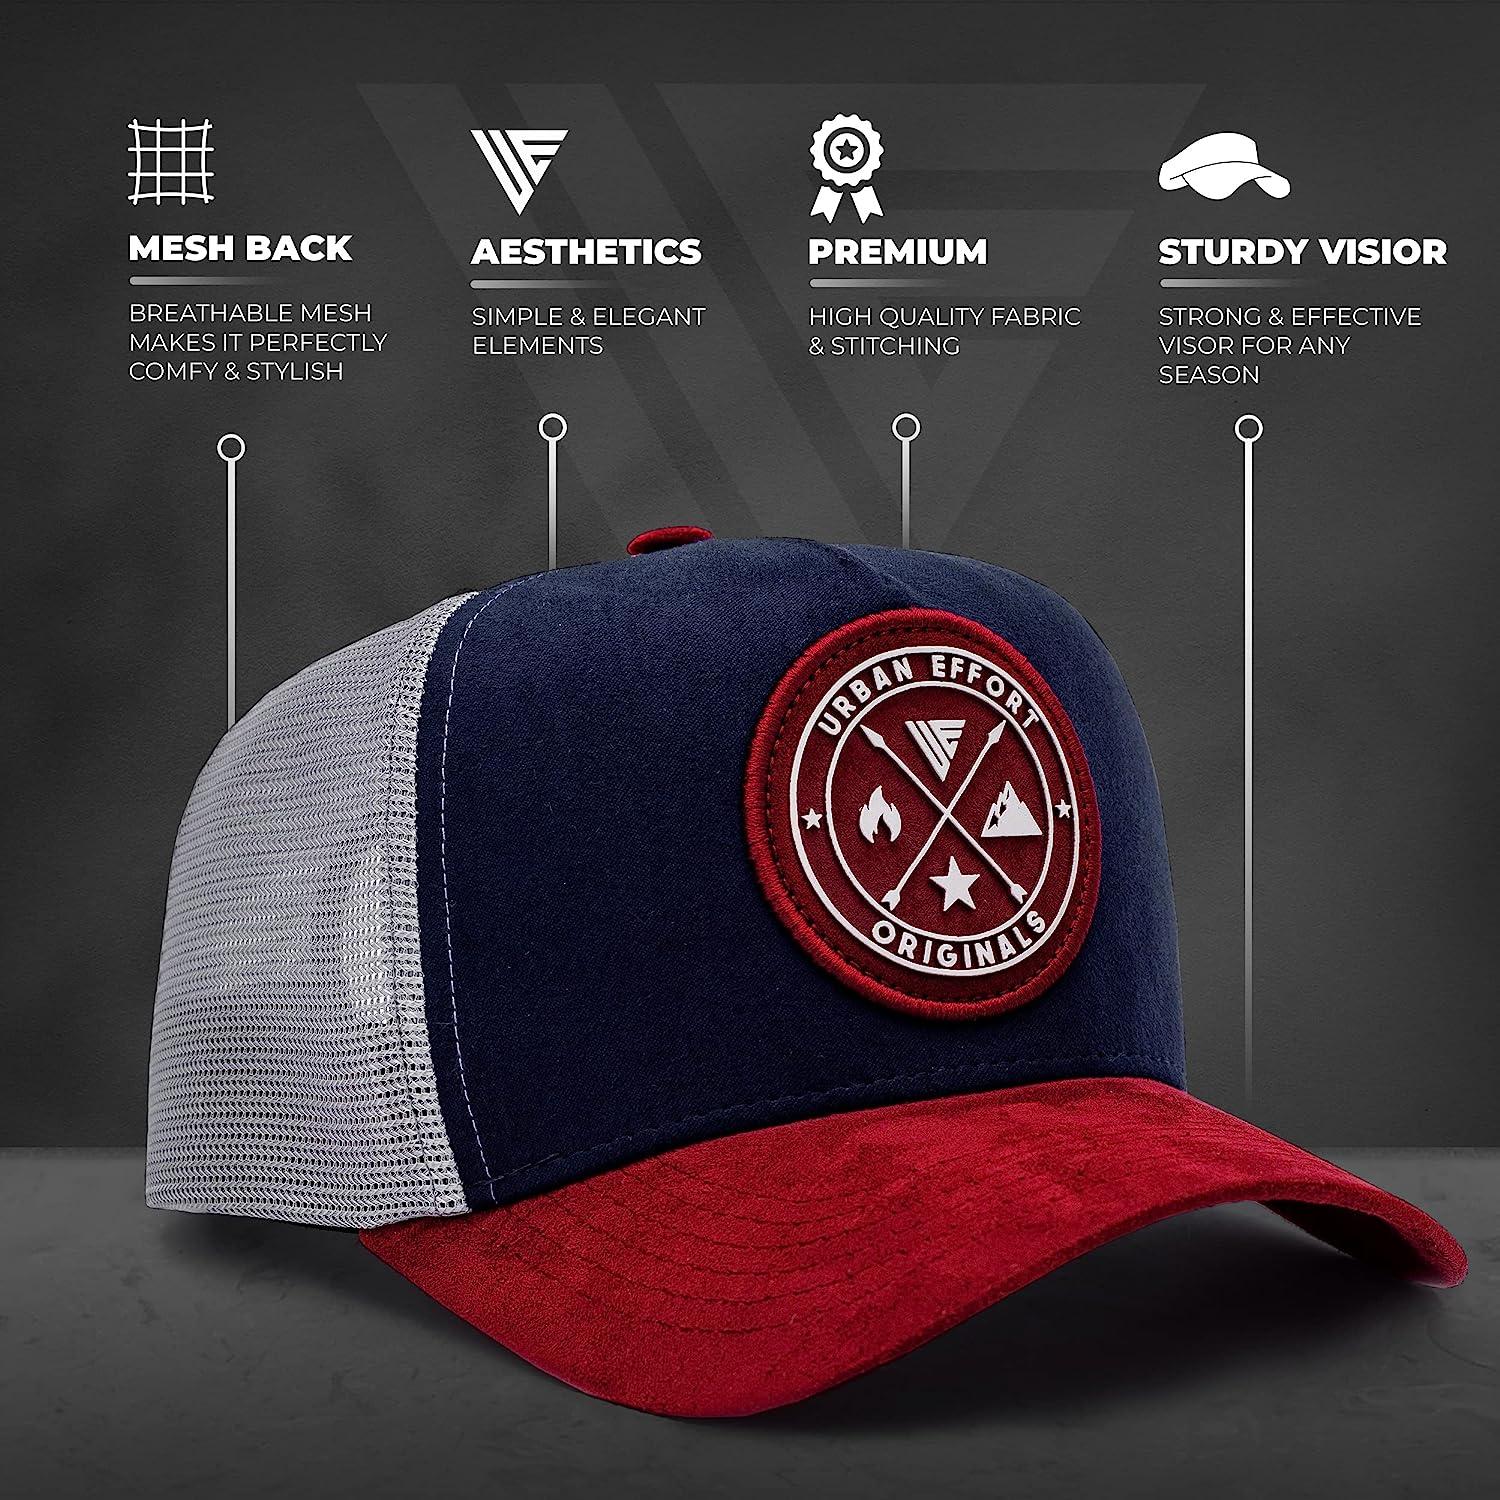 Urban Effort Mesh Back Cap - for Men and Women Baseball Hat 5